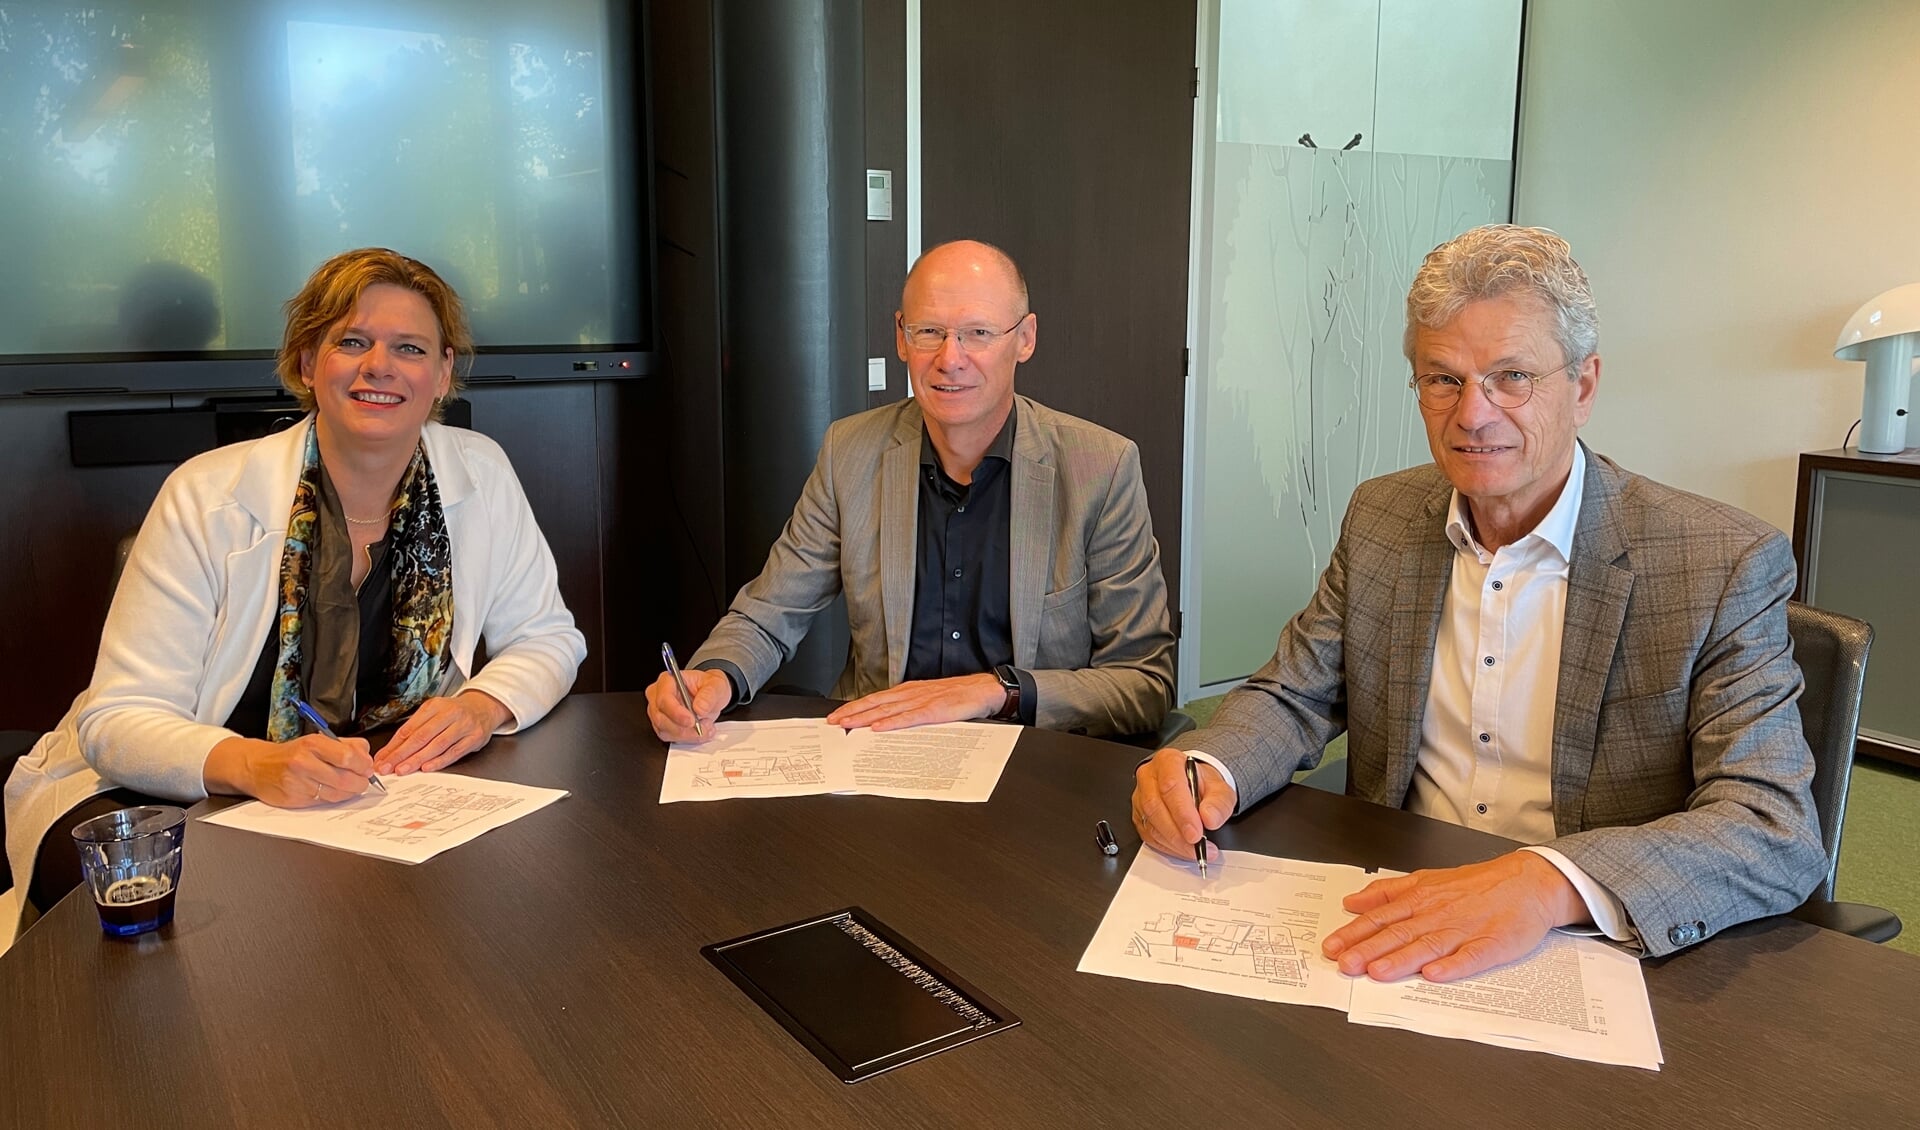 De ondertekening van de intentieovereenkomst De Hassinkhof met (vlnr) Hanke Struik (directeur bestuurder ProWonen), Hans Poortier (bestuurder Sius), Marcel Duvigneau (voorzitter raad van bestuur Marga Klompé). Foto: PR